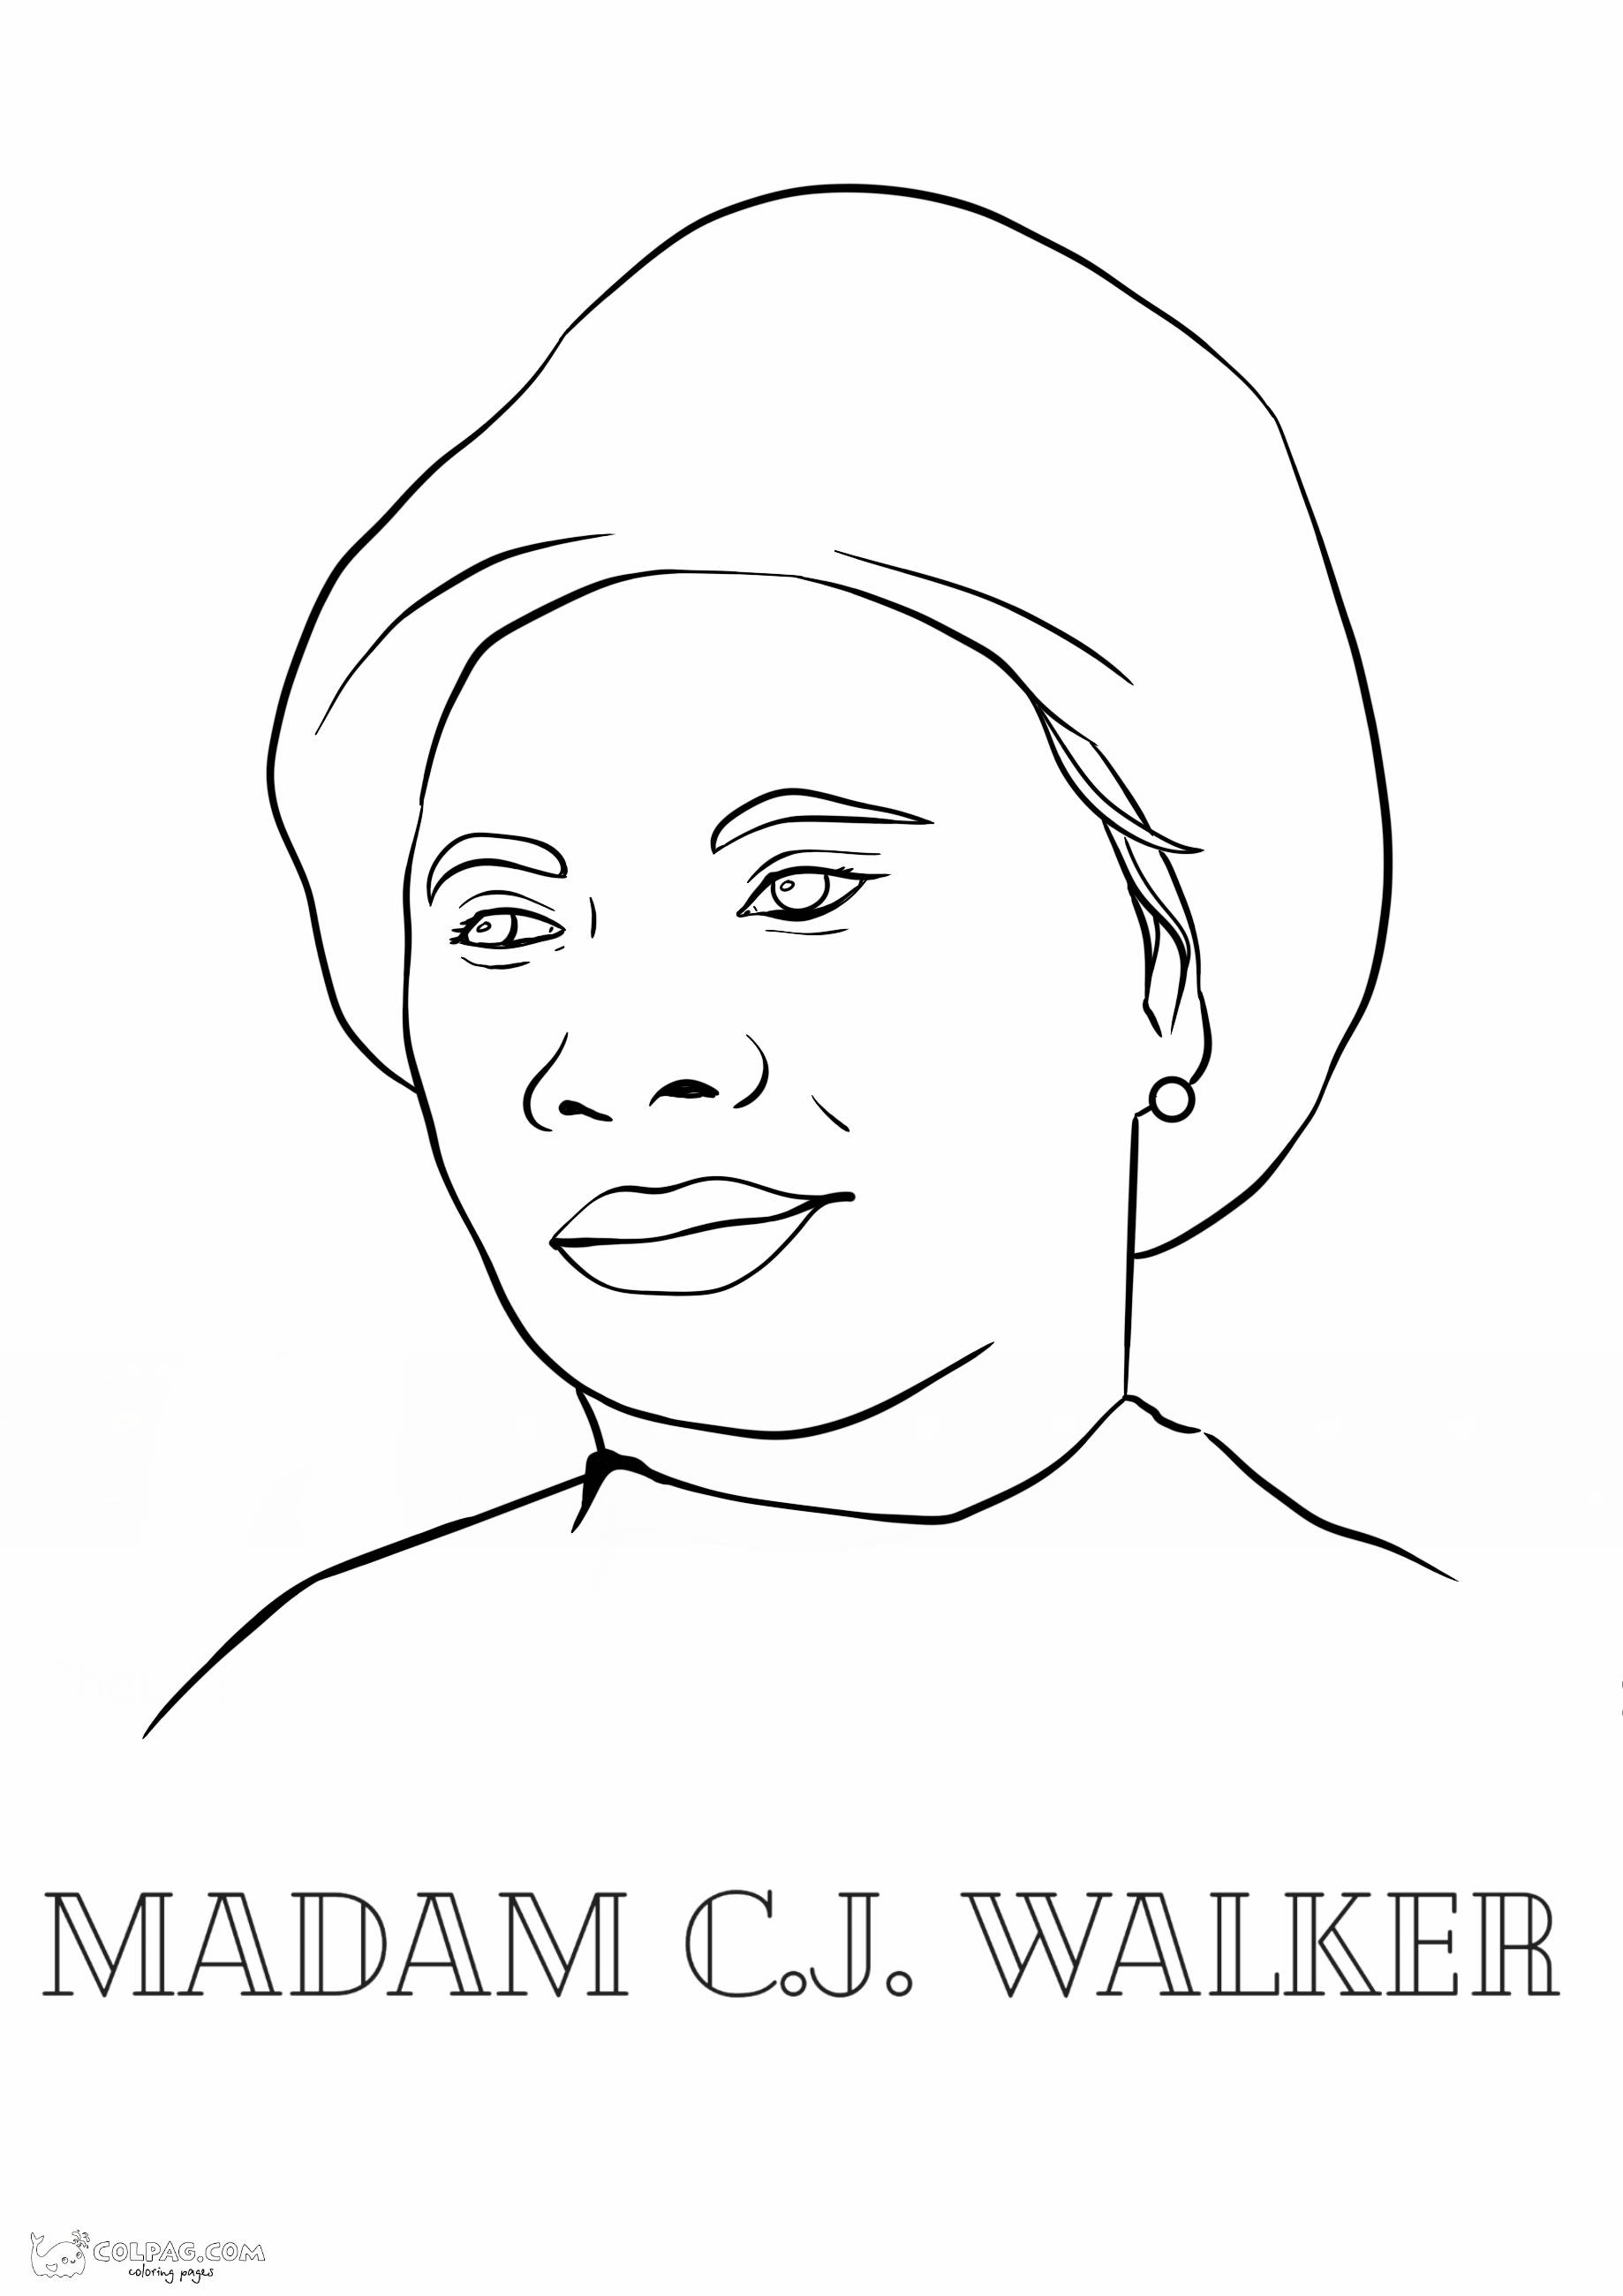 madam-cj-walker-colpag-coloring-page-1